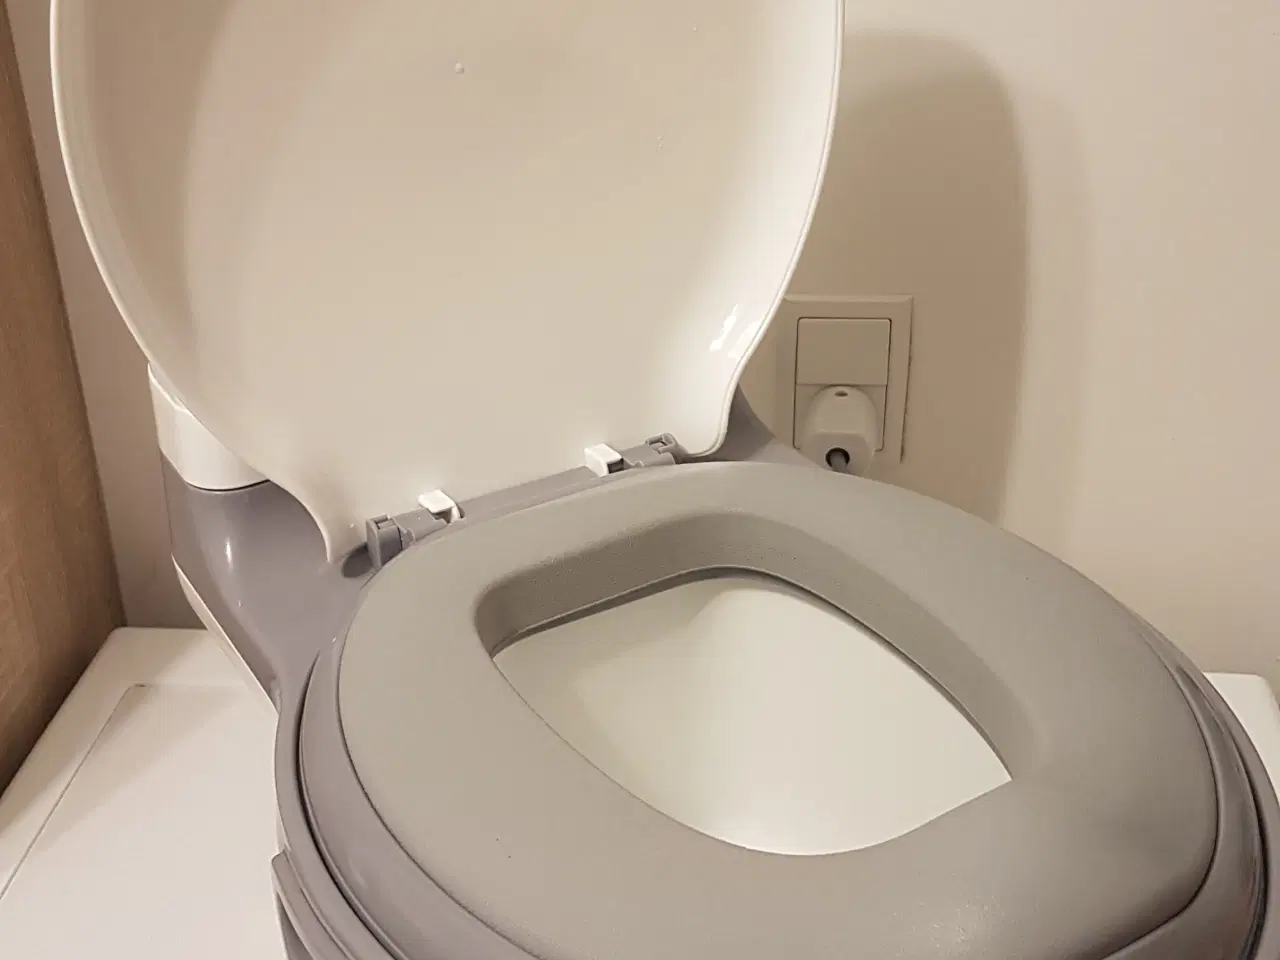 Billede 2 - Toilet potte